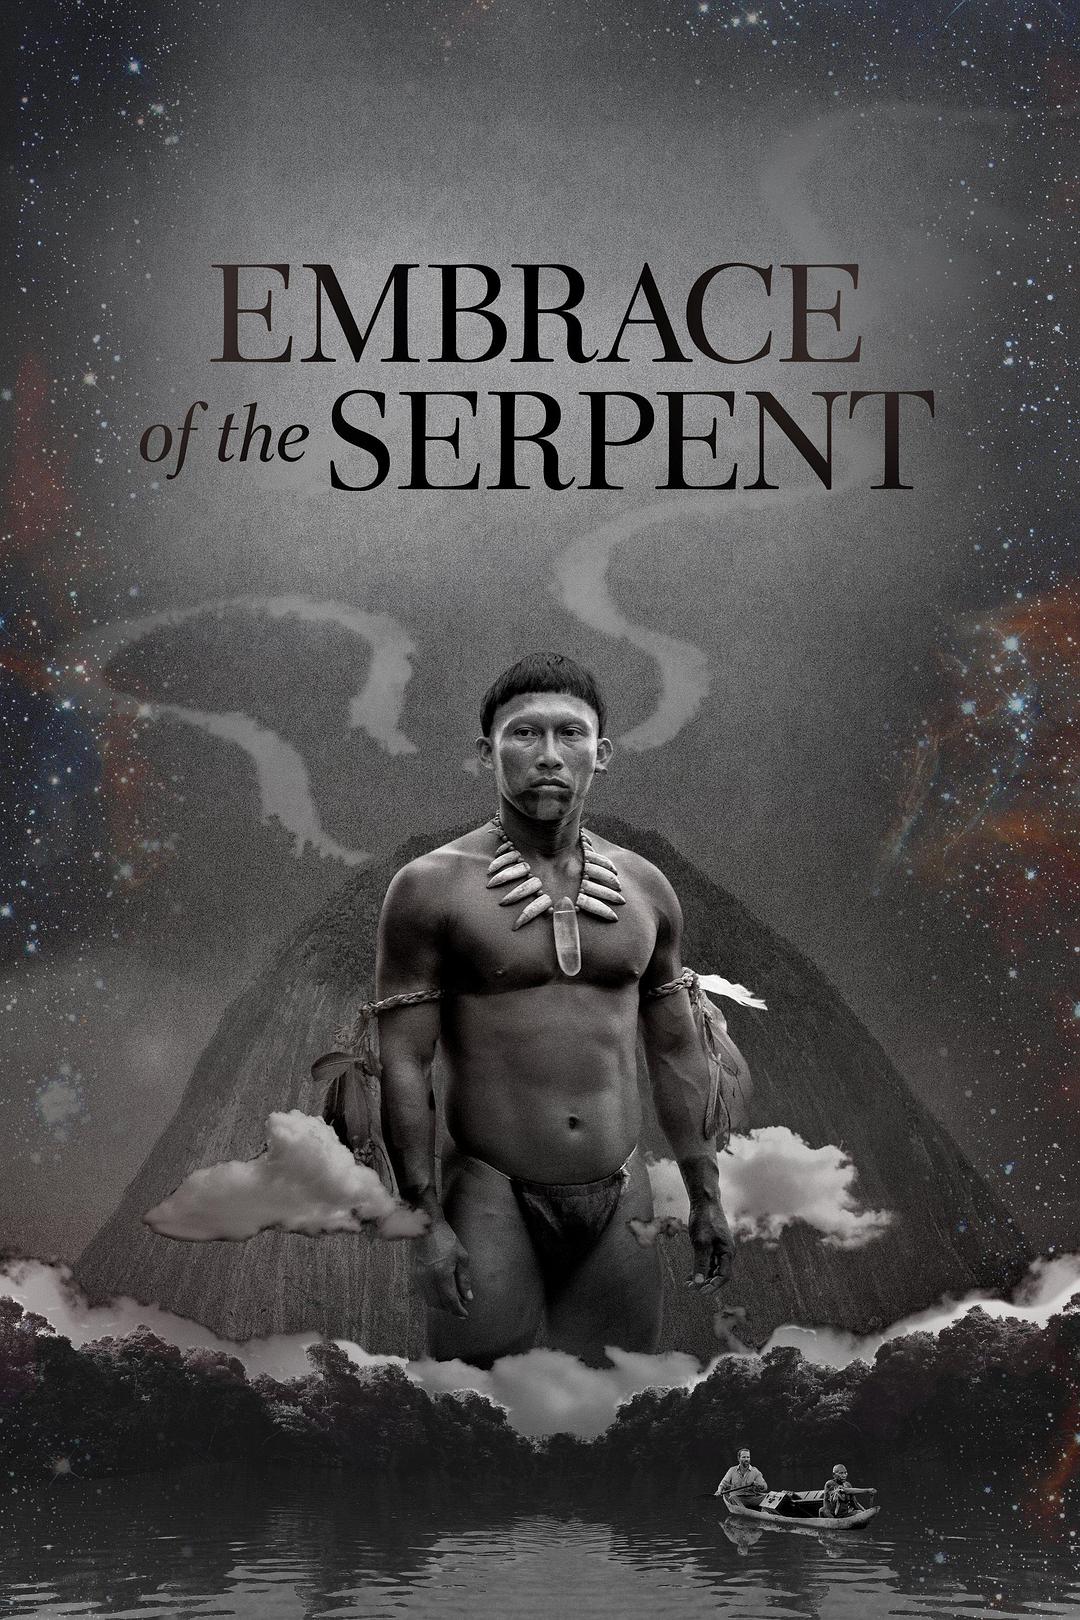 蛇之拥抱 蓝光原盘下载+高清MKV版/与蛇共舞(港) / 梦游亚马逊(台) / Embrace of the Serpent 2015 El Abrazo de la Serpiente 40.0G